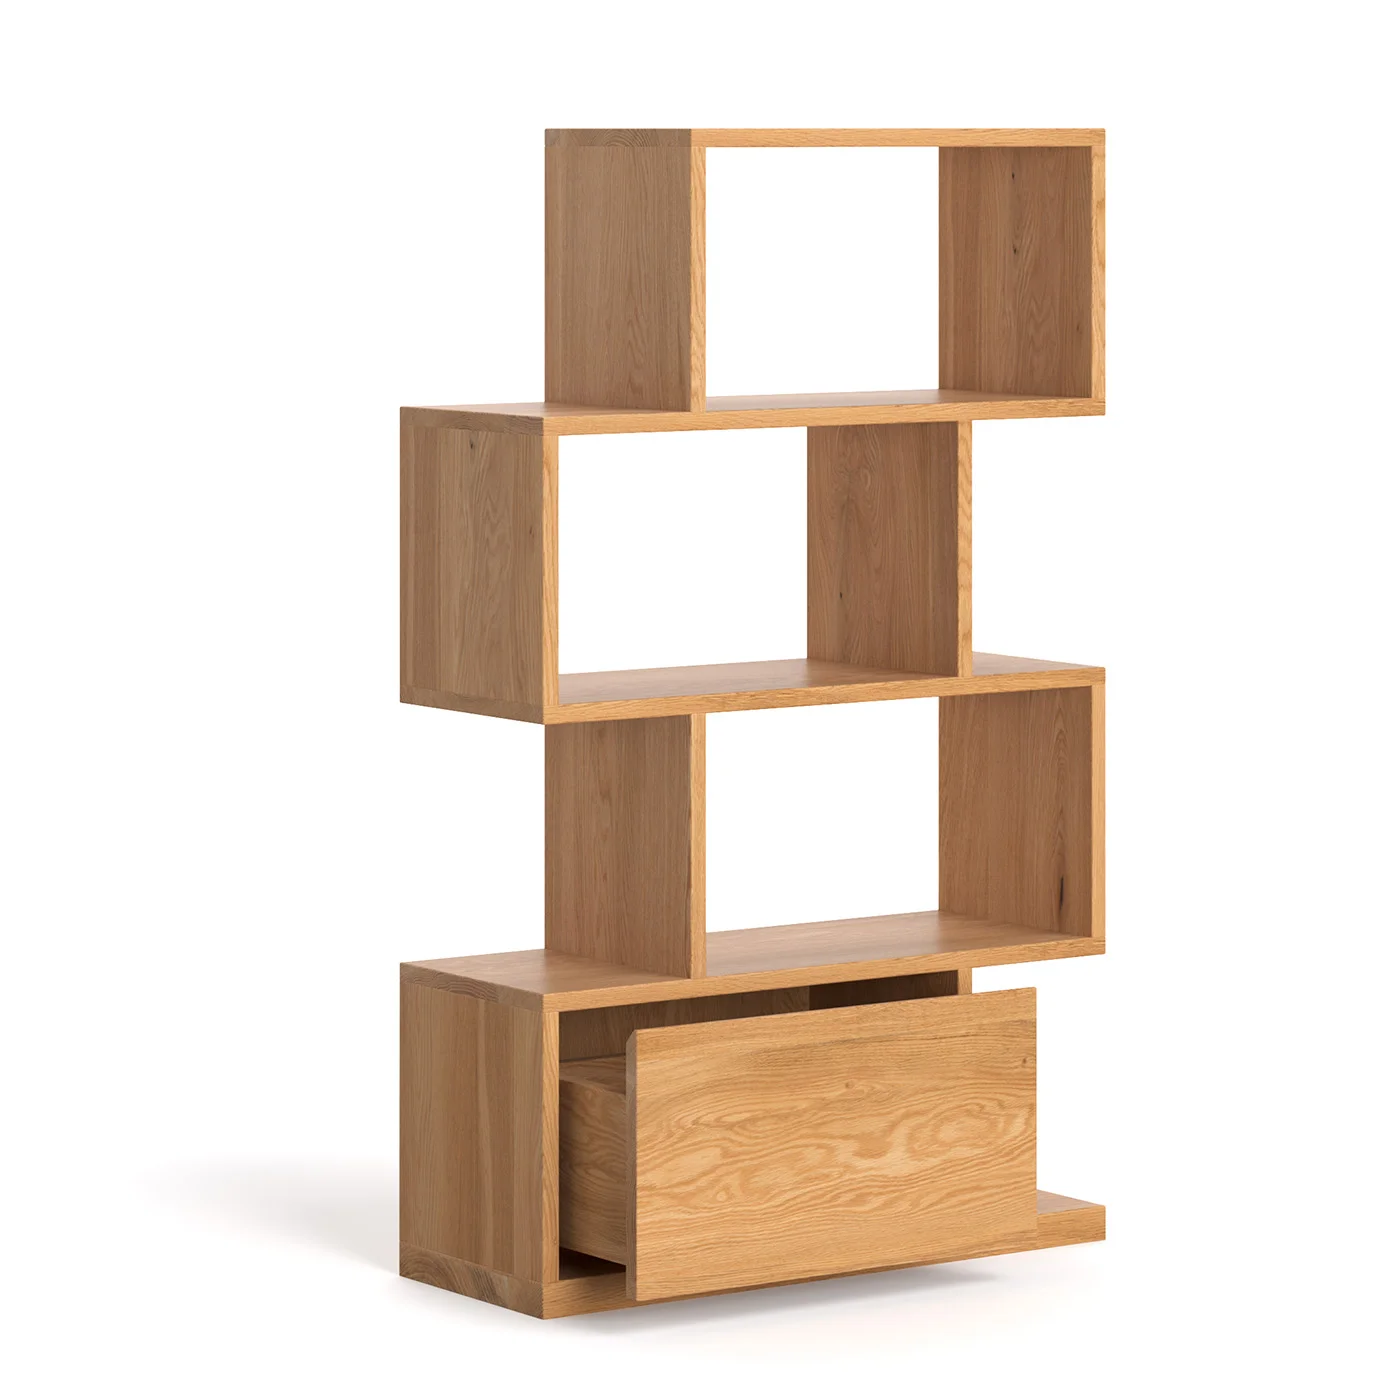 Domino-Bücherregal aus Holz